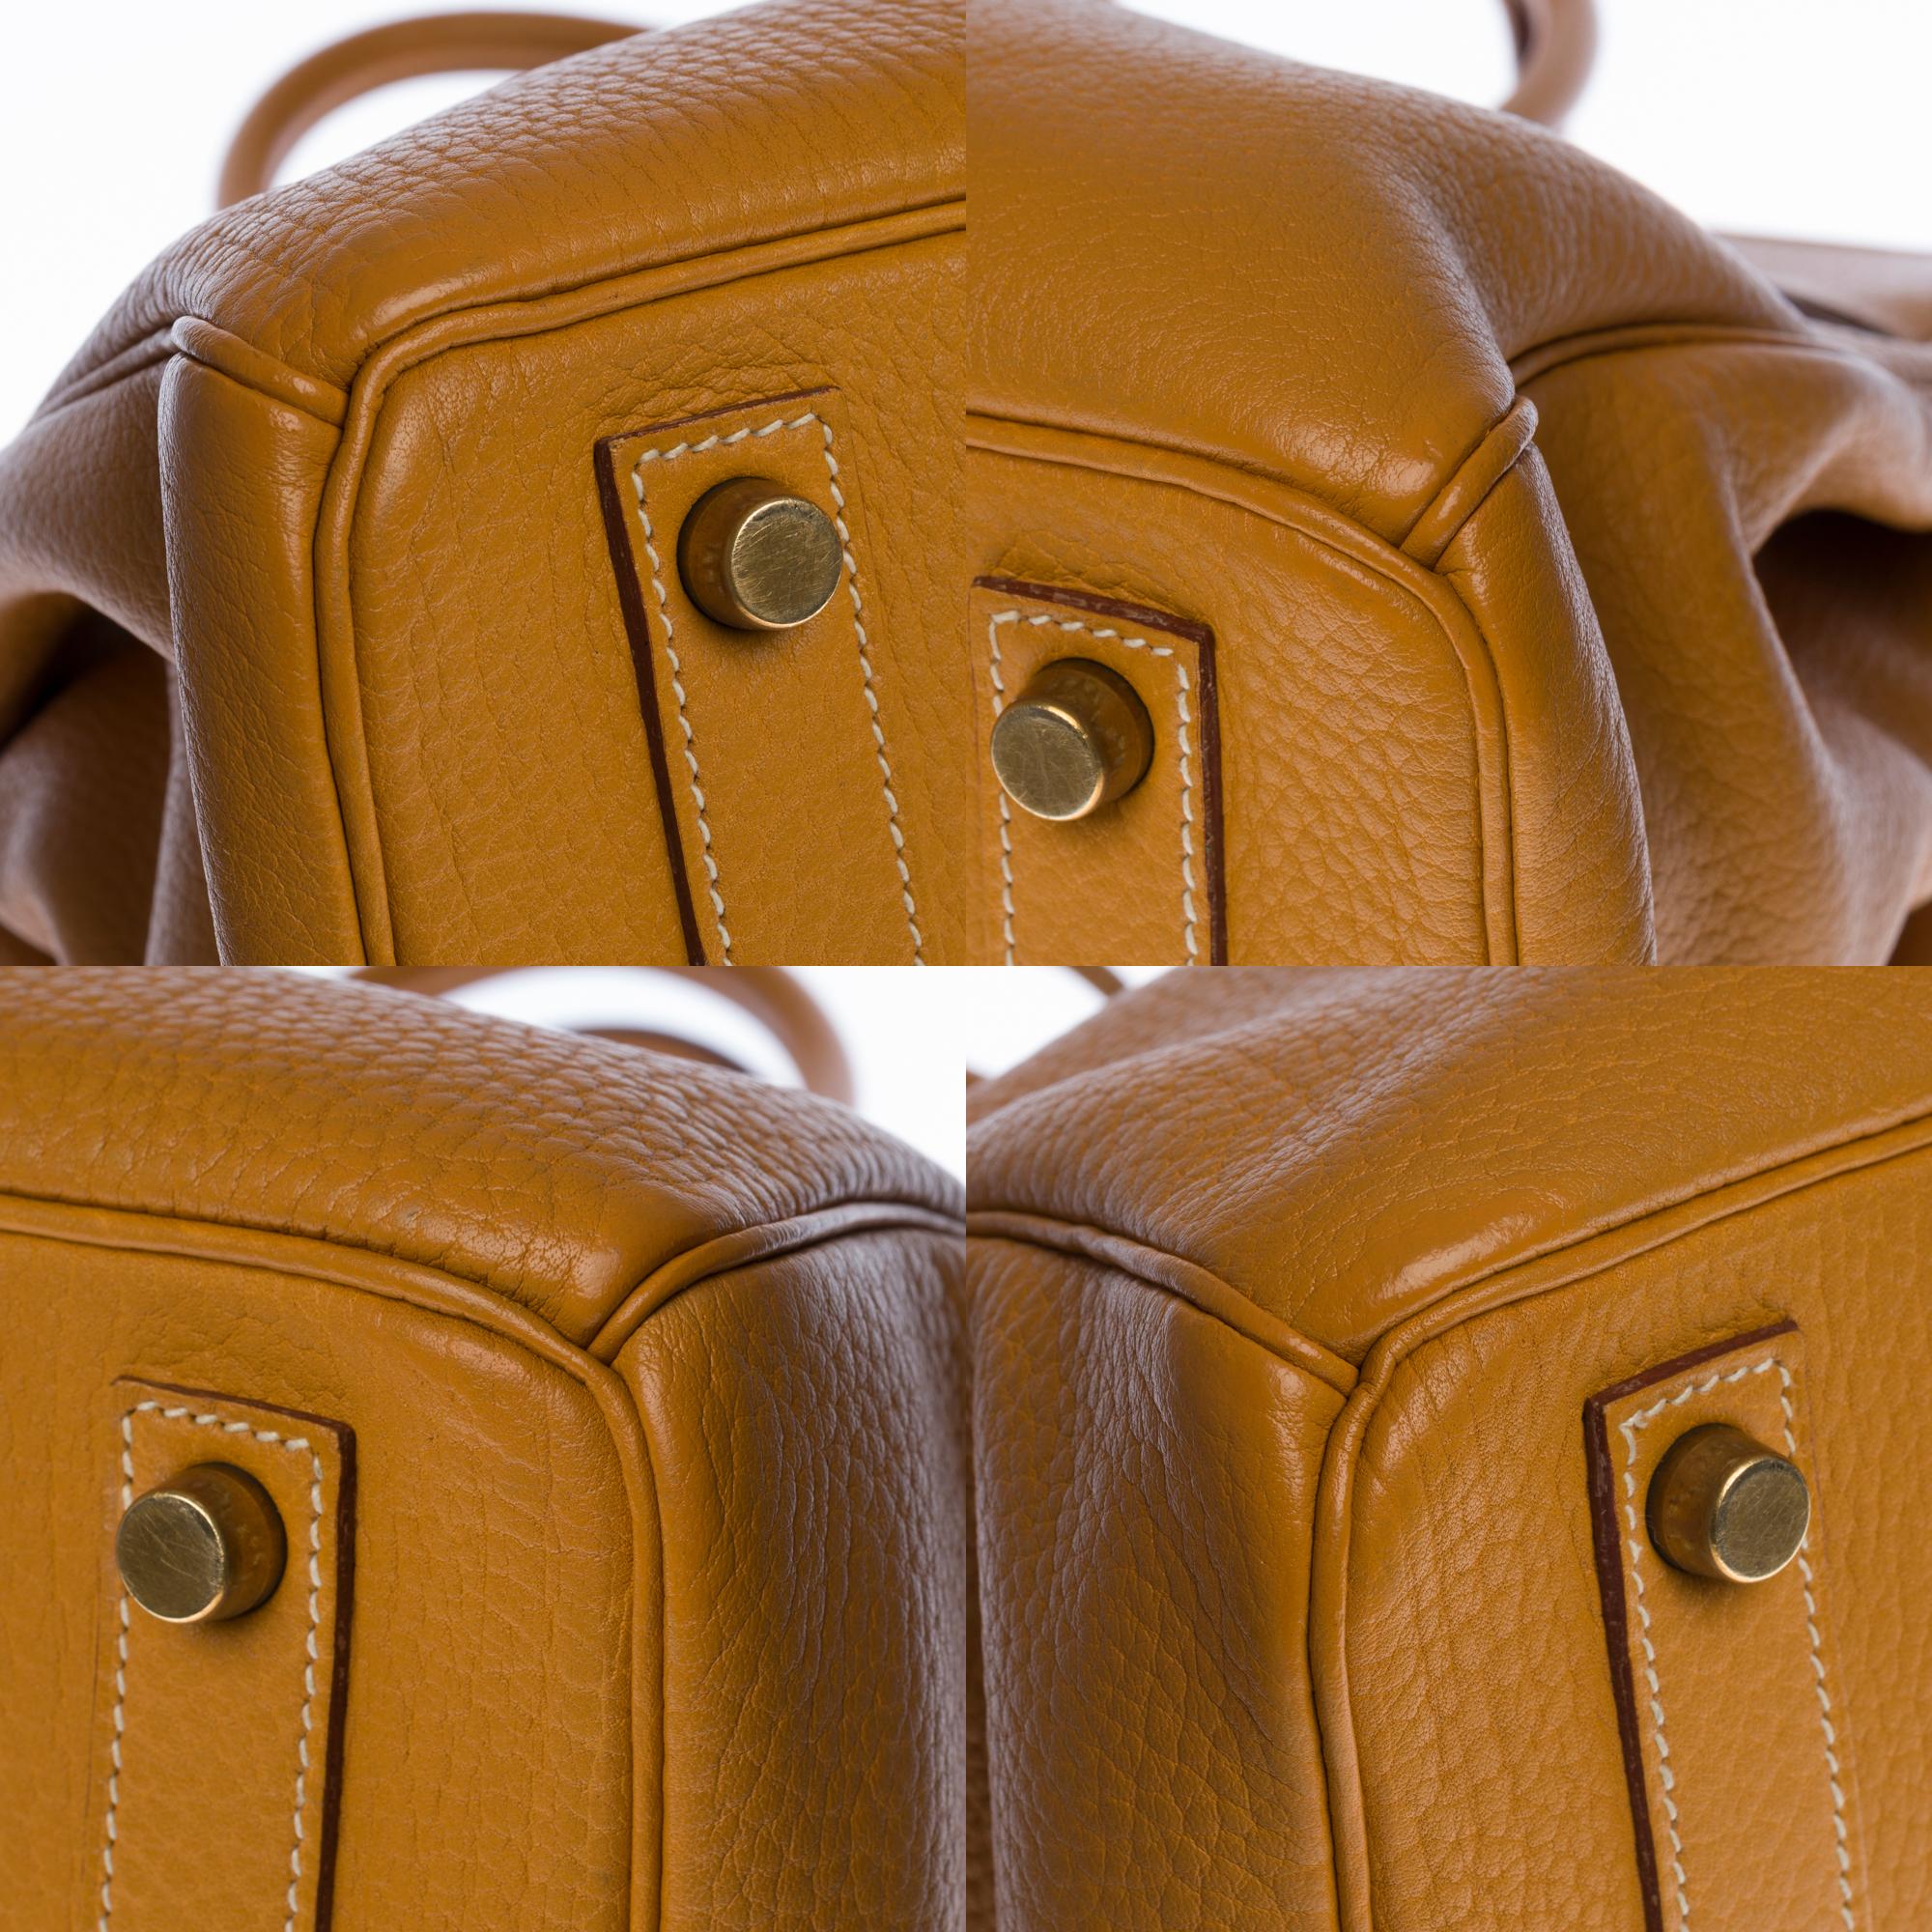 Rare Hermès Haut-à-Courroies (HAC) handbag in Gold Vache Ardennes leather, GHW 3